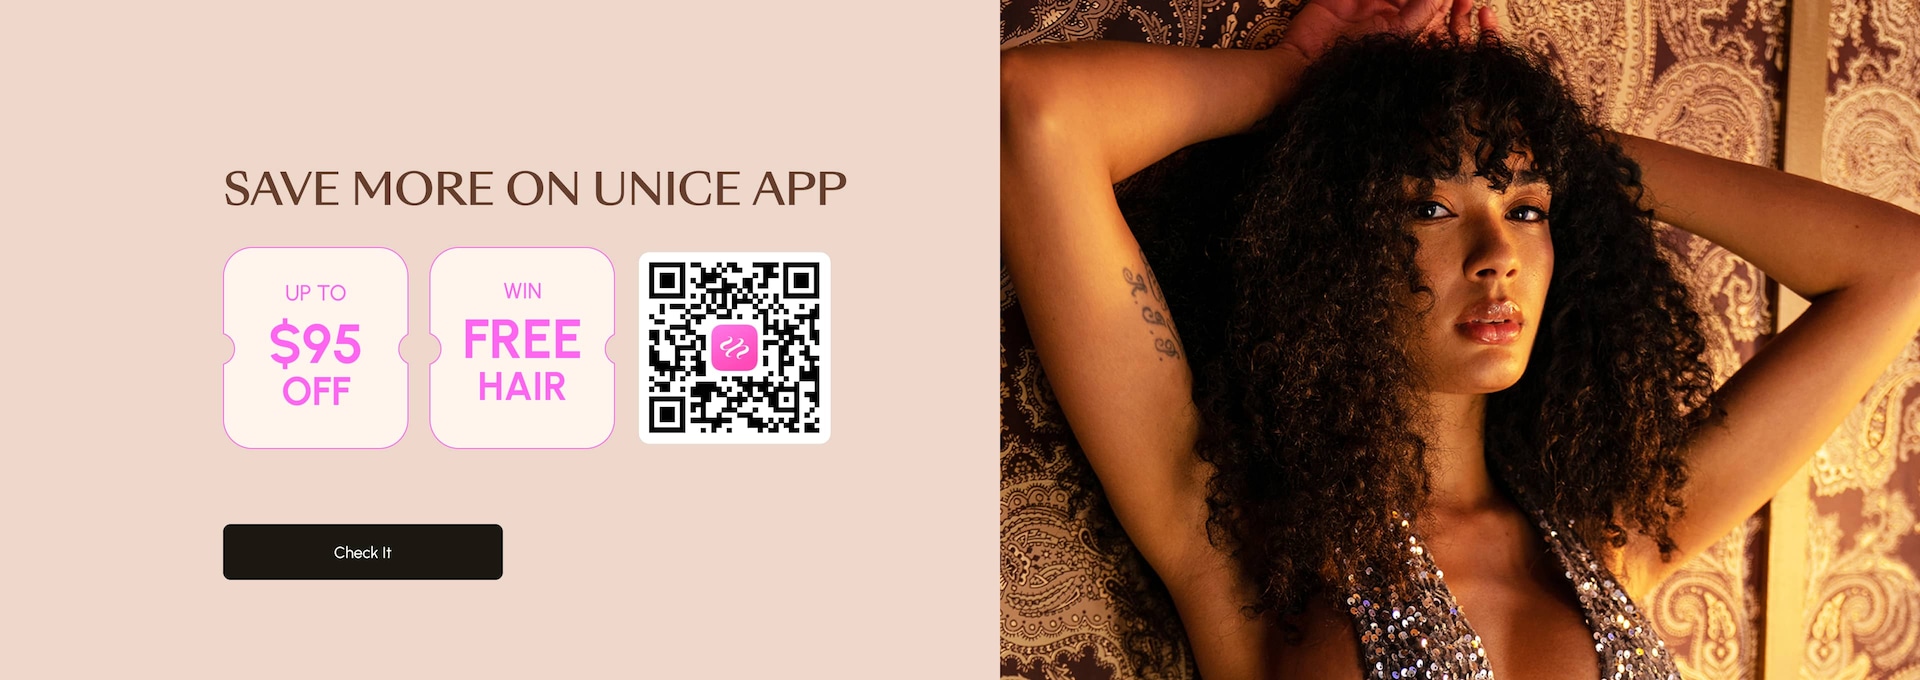 pc-unice-brand-app-0213